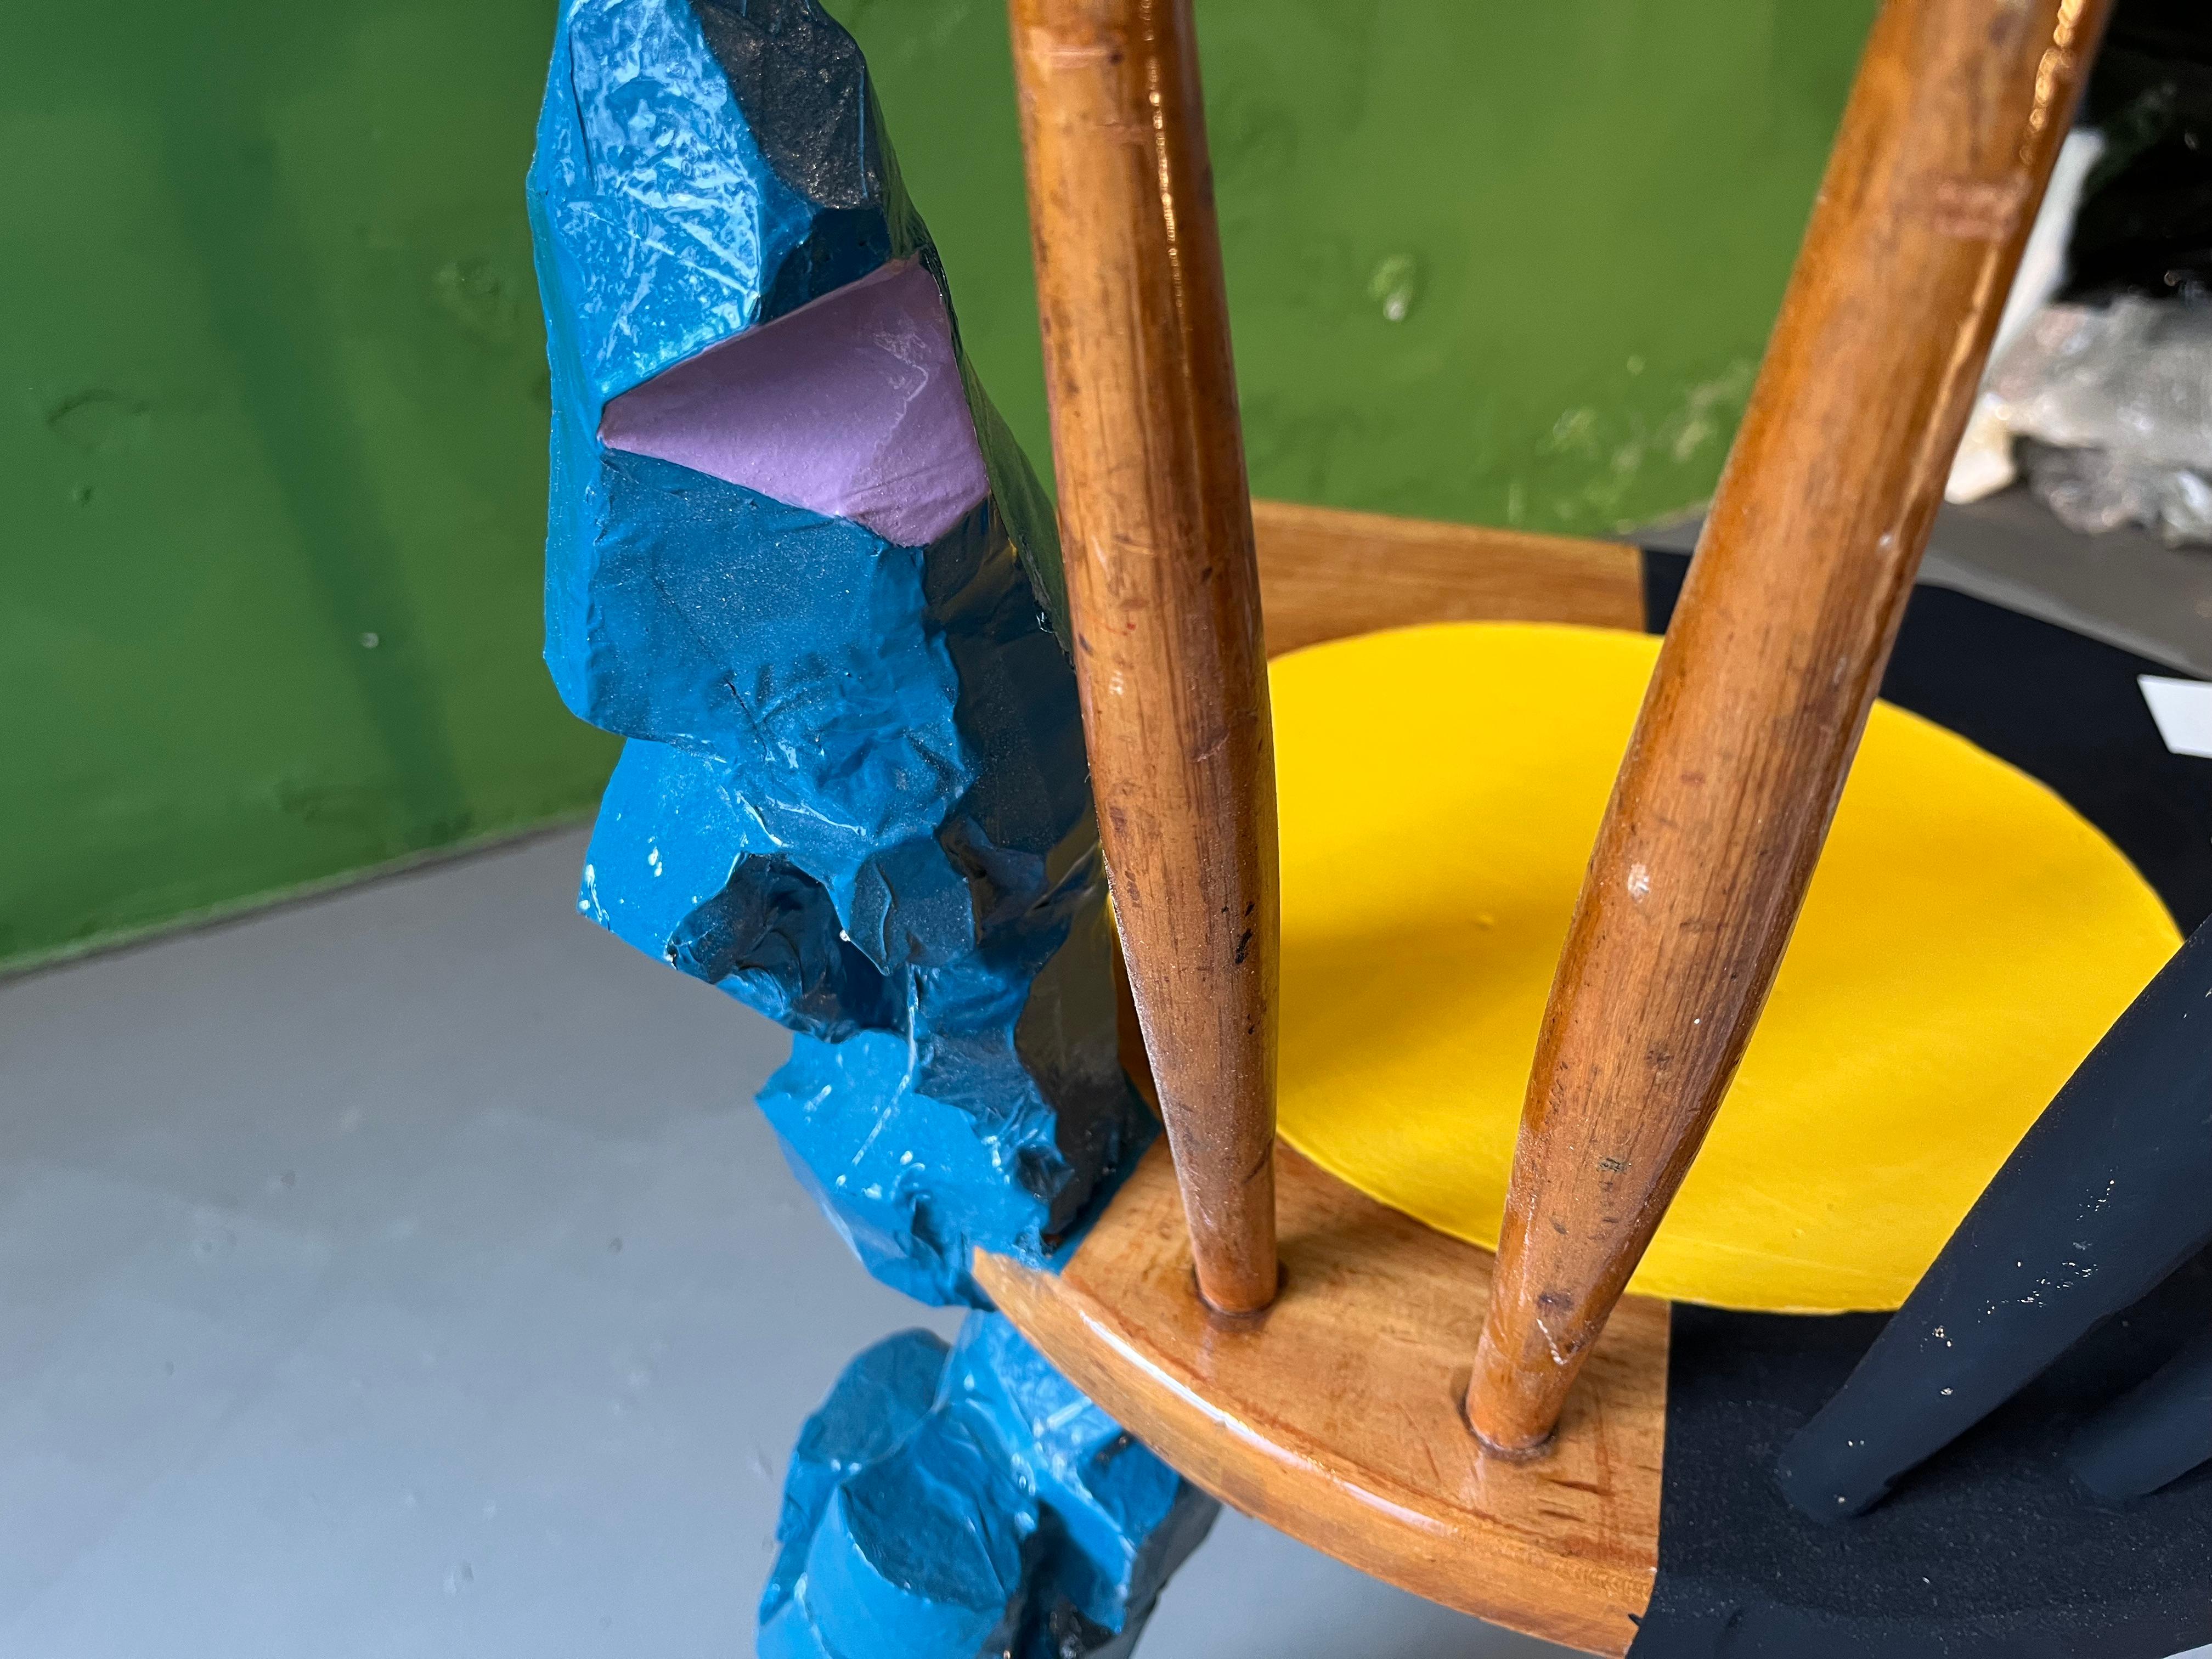 Chaise de design/One. Chaise de cuisine bavaroise traditionnelle modernisée, avec ajout d'un pied sculpté, remodelée, peinte et laquée à plusieurs reprises par Markus Friedrich Staab.
Vous pouvez utiliser cette chaise au quotidien ou la considérer